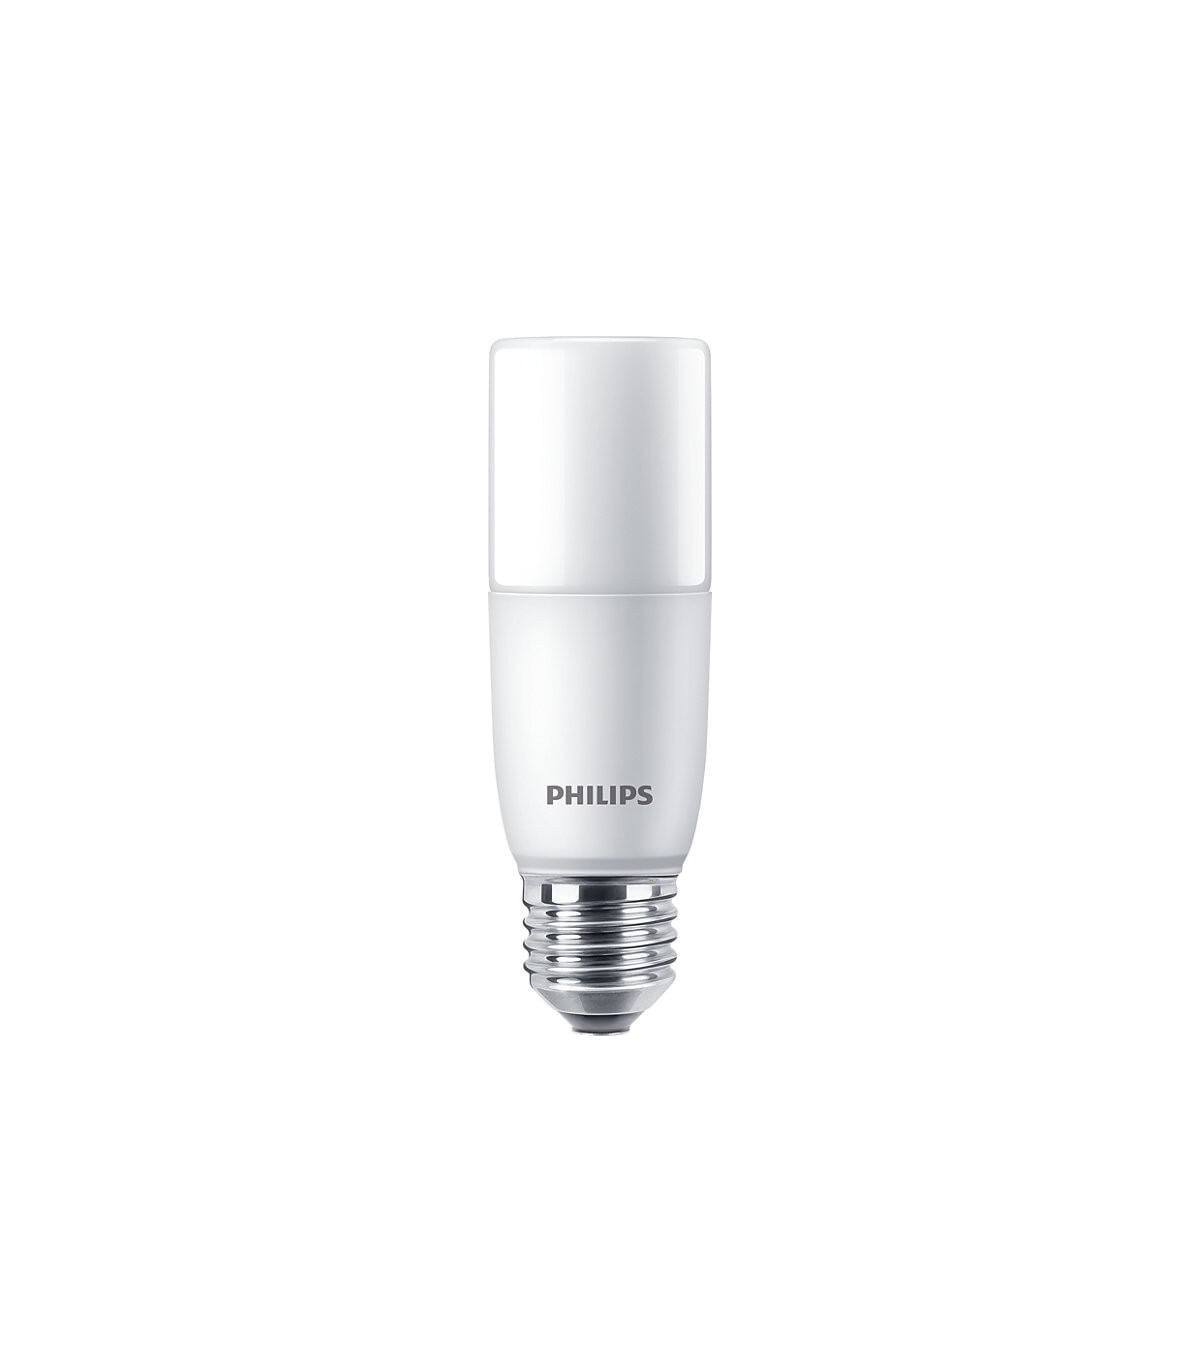 Philips E27 ampoule LED à réflecteur classique R63 dimmable 4.5W (60W)  Philips